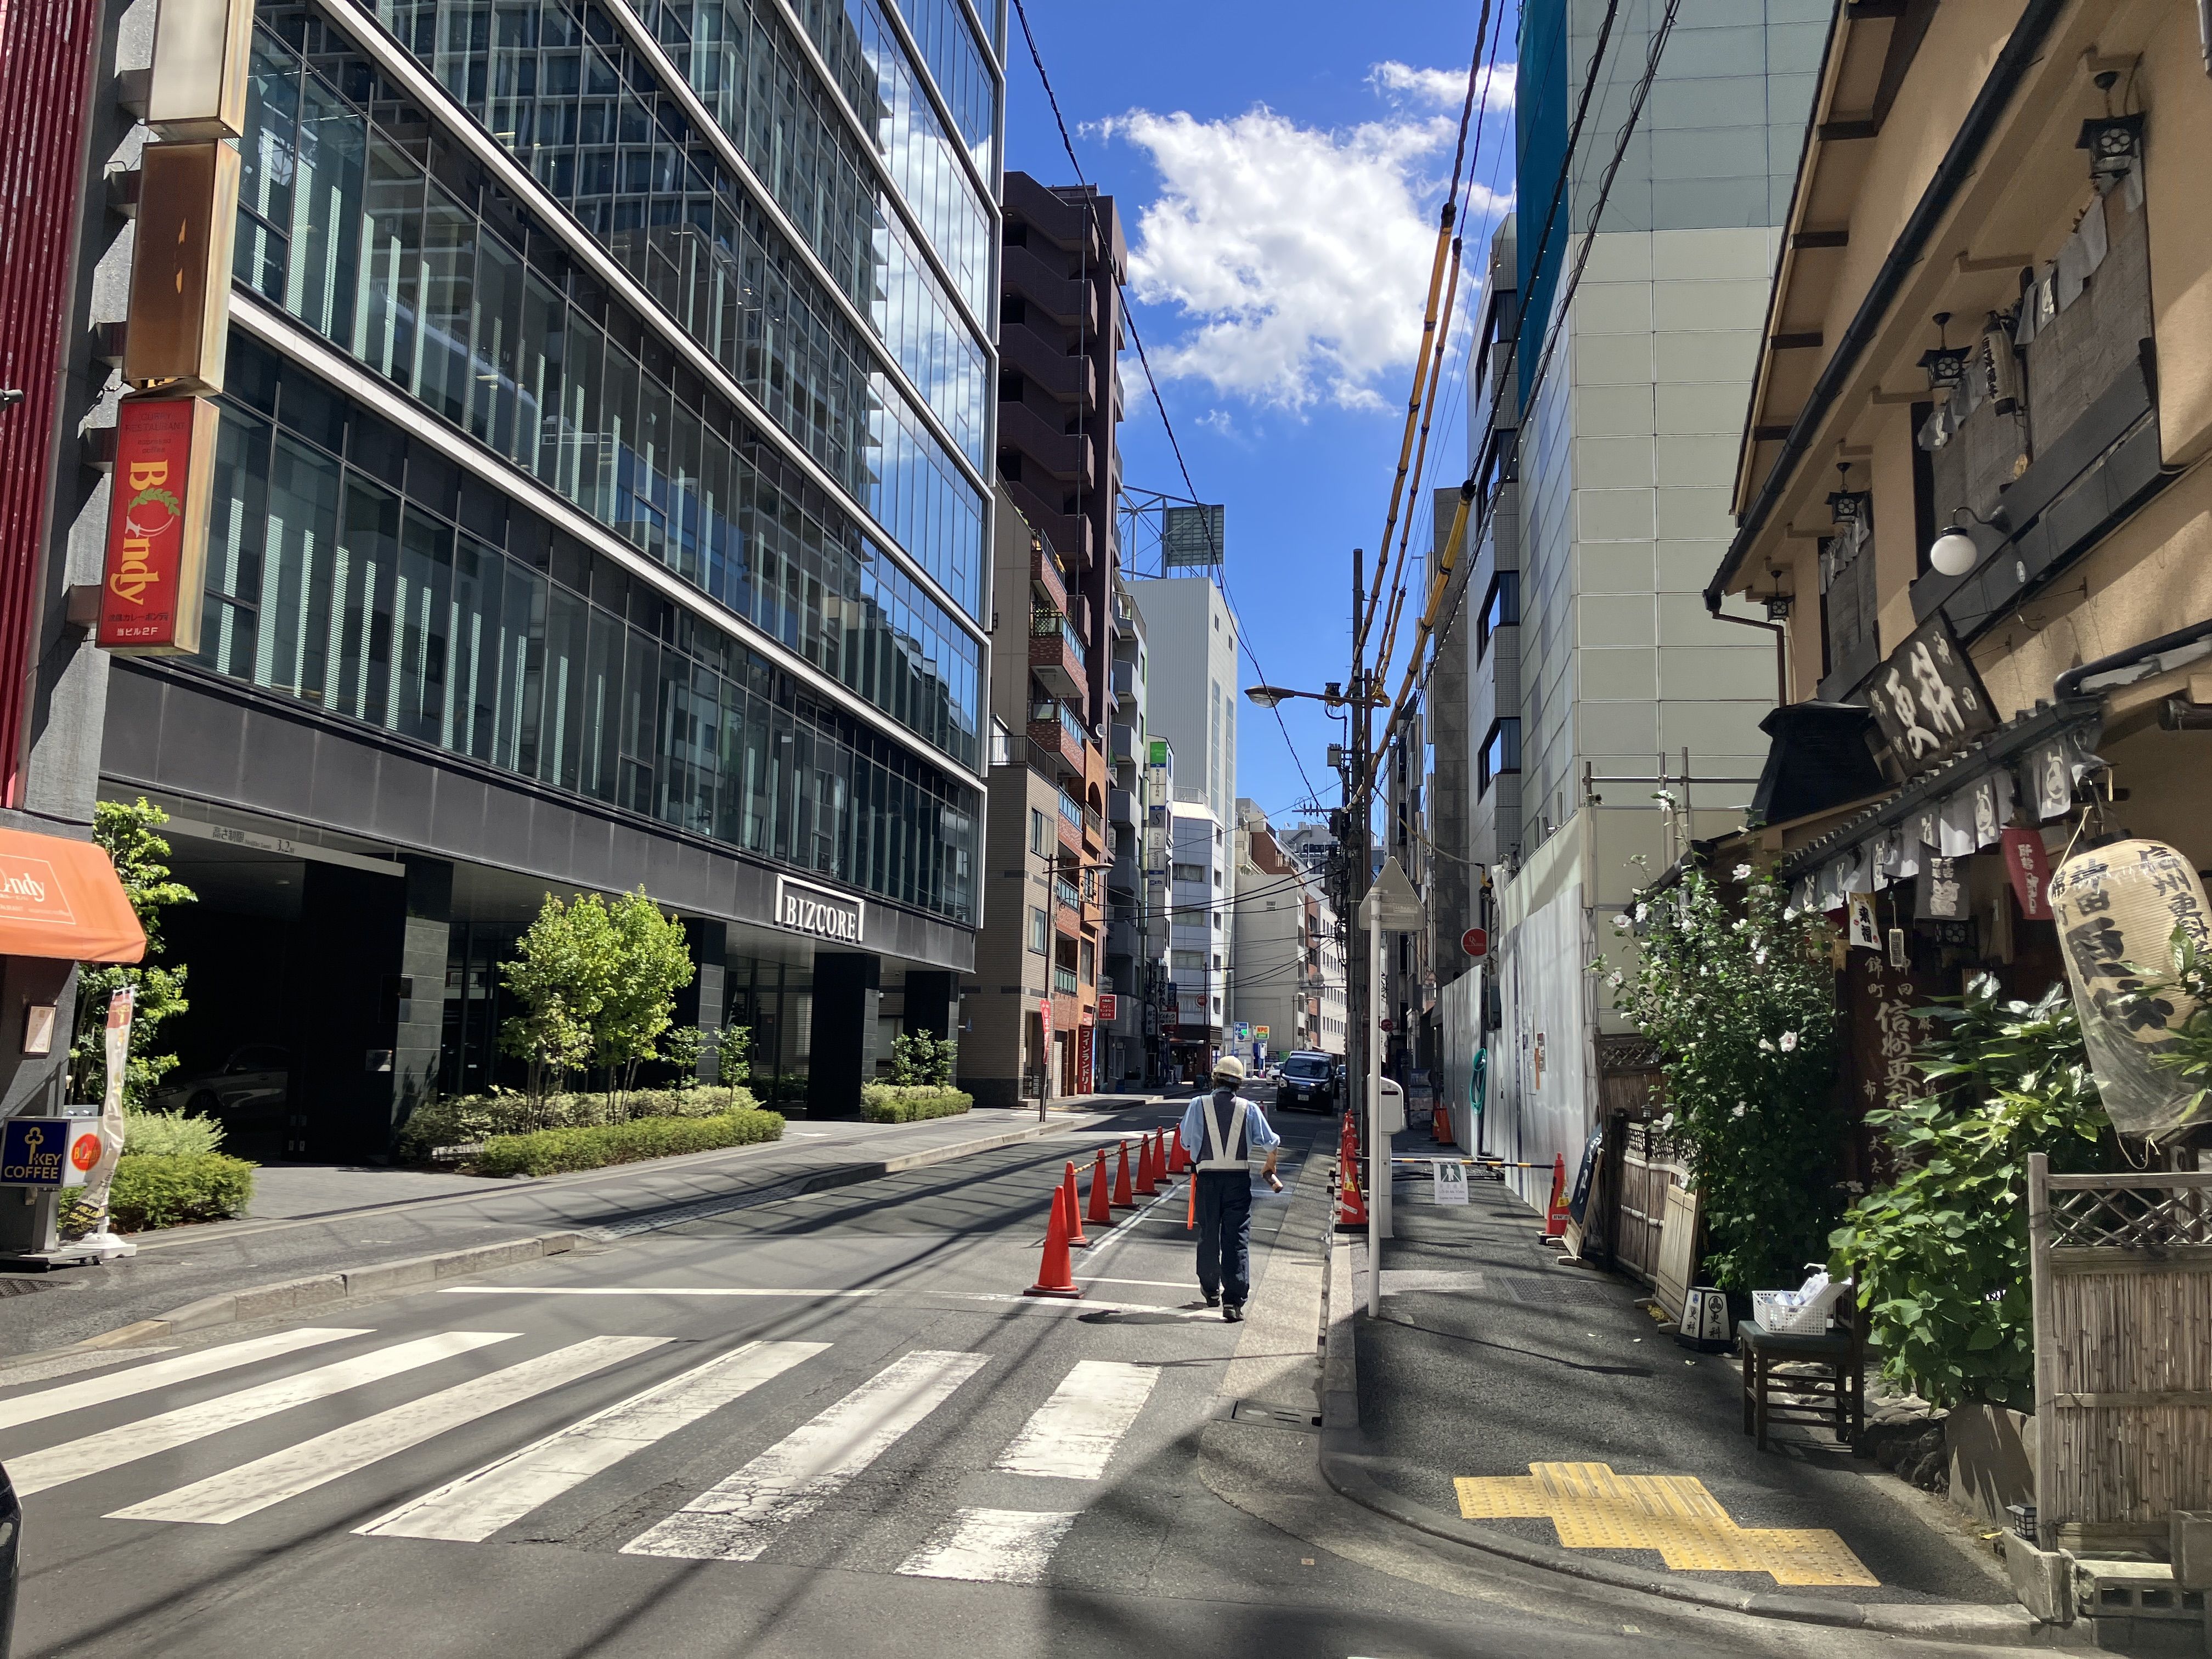 老舗そば屋「神田錦町更科」を見ながら五十通りを約50m直進